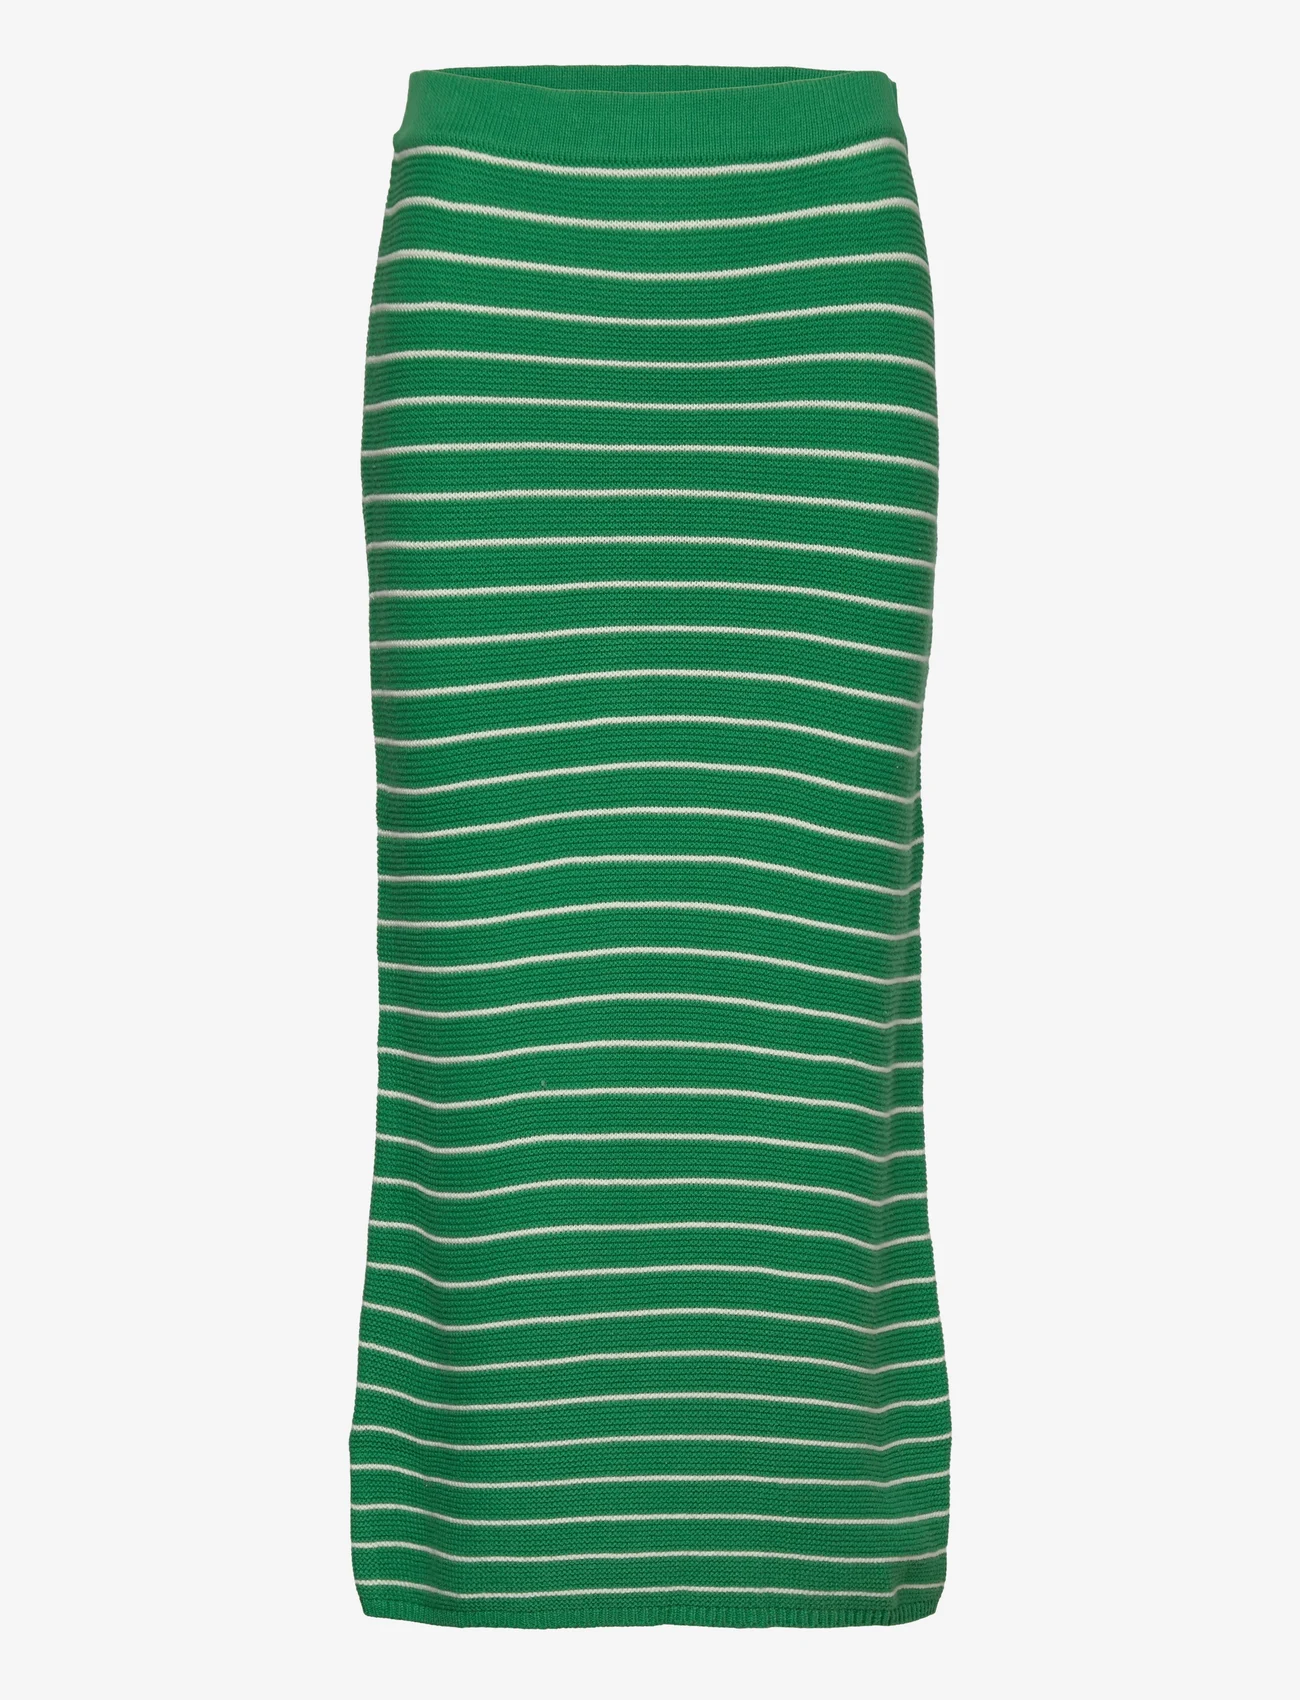 Mango - Striped knitted skirt - strikkede nederdele - green - 0